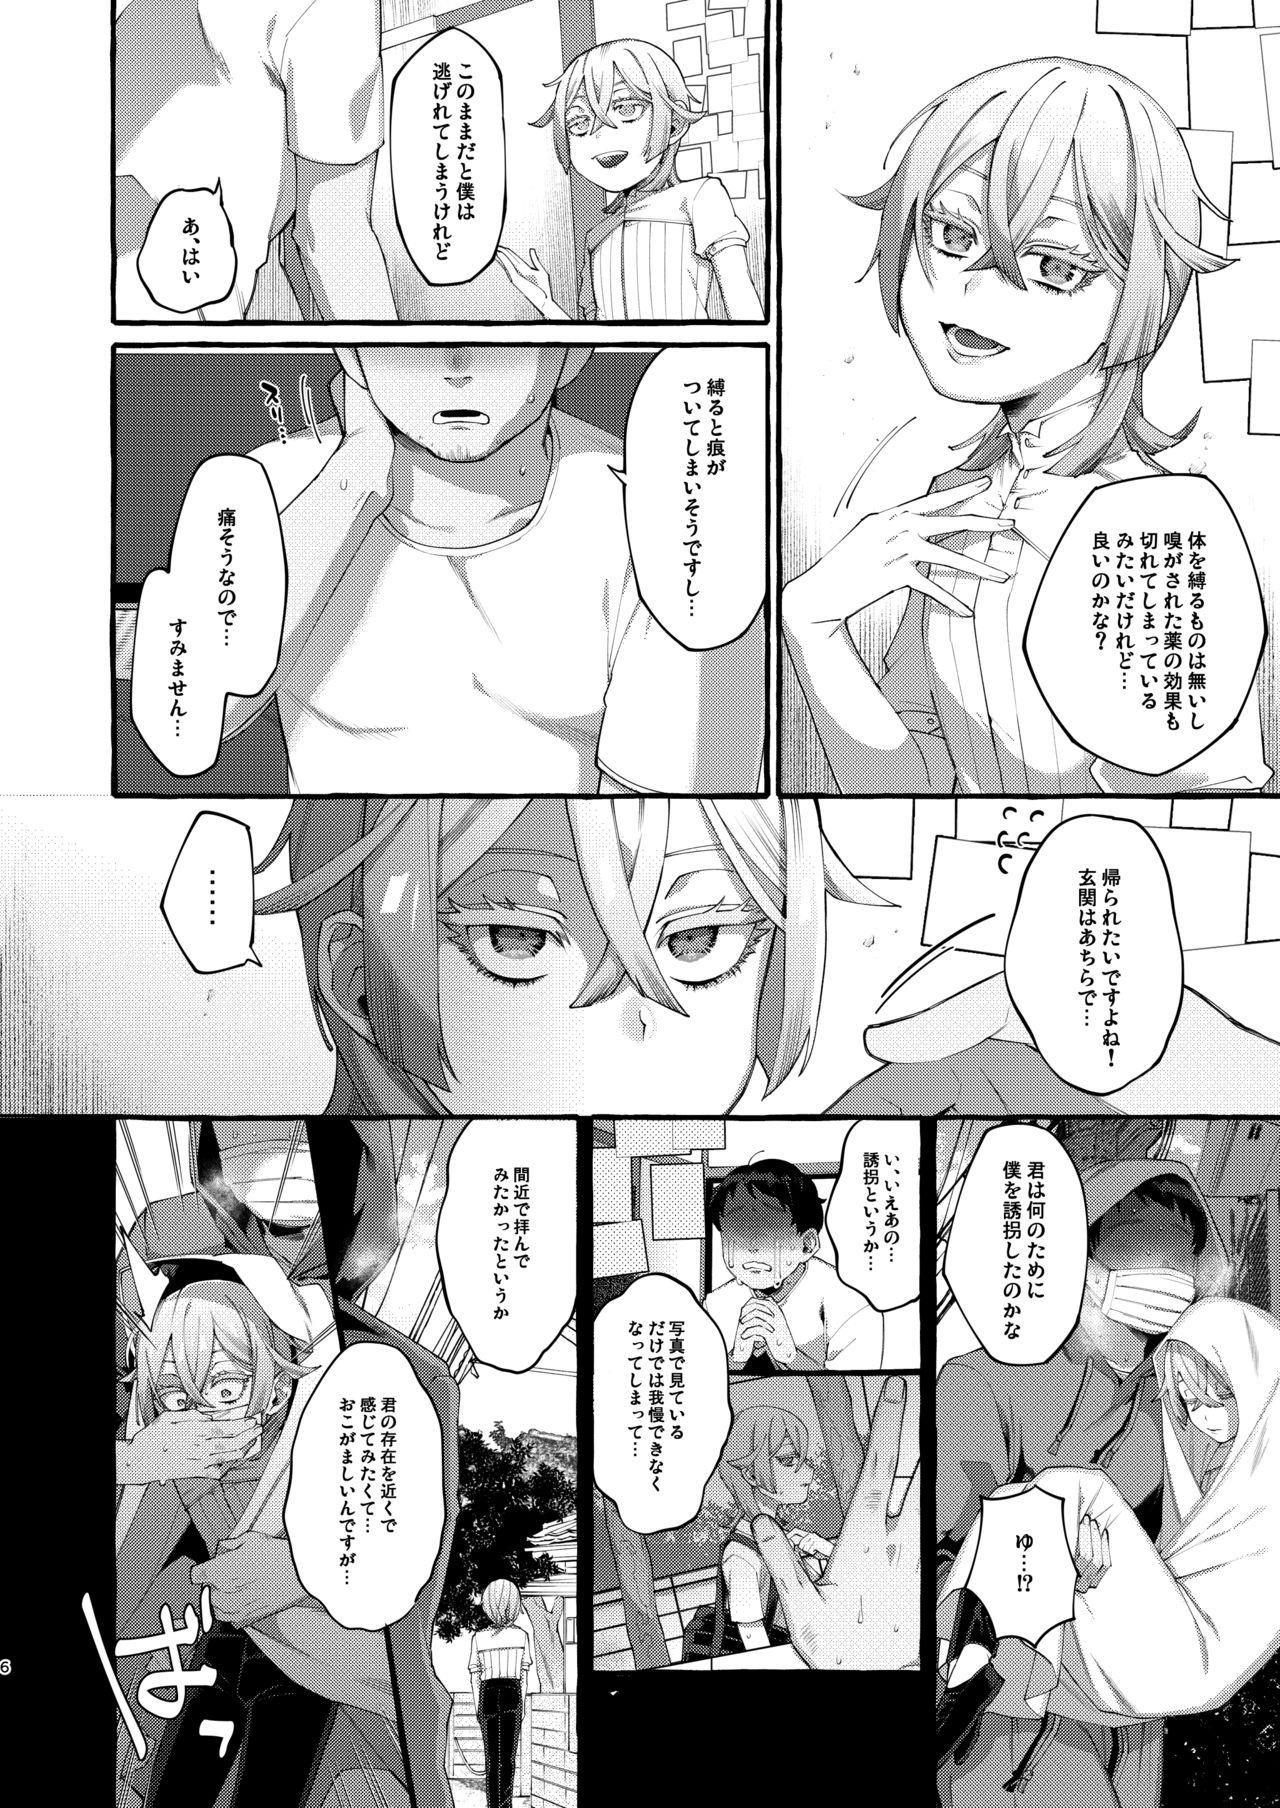 Harcore Kare wa Boku no Kami-sama de aru. - Original Huge - Page 6